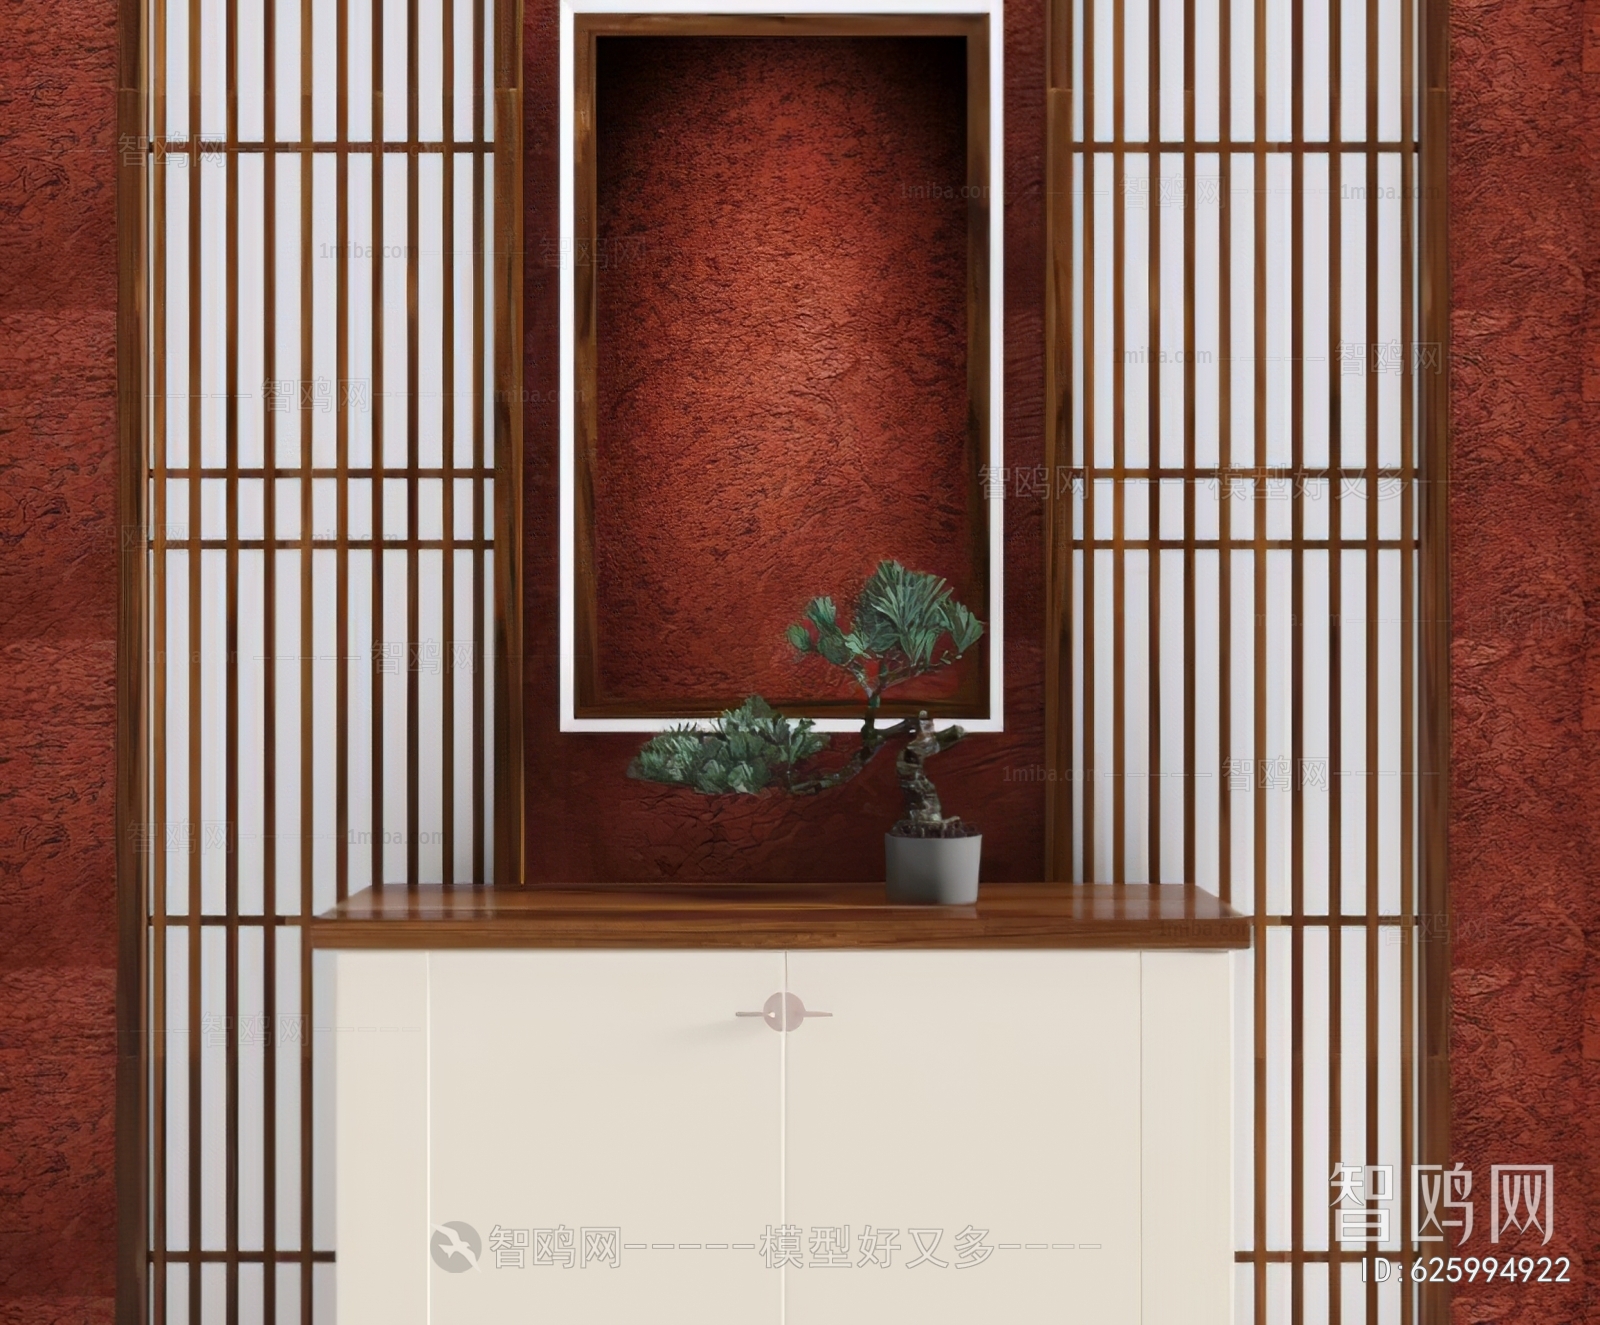 Chinese Style Bonsai